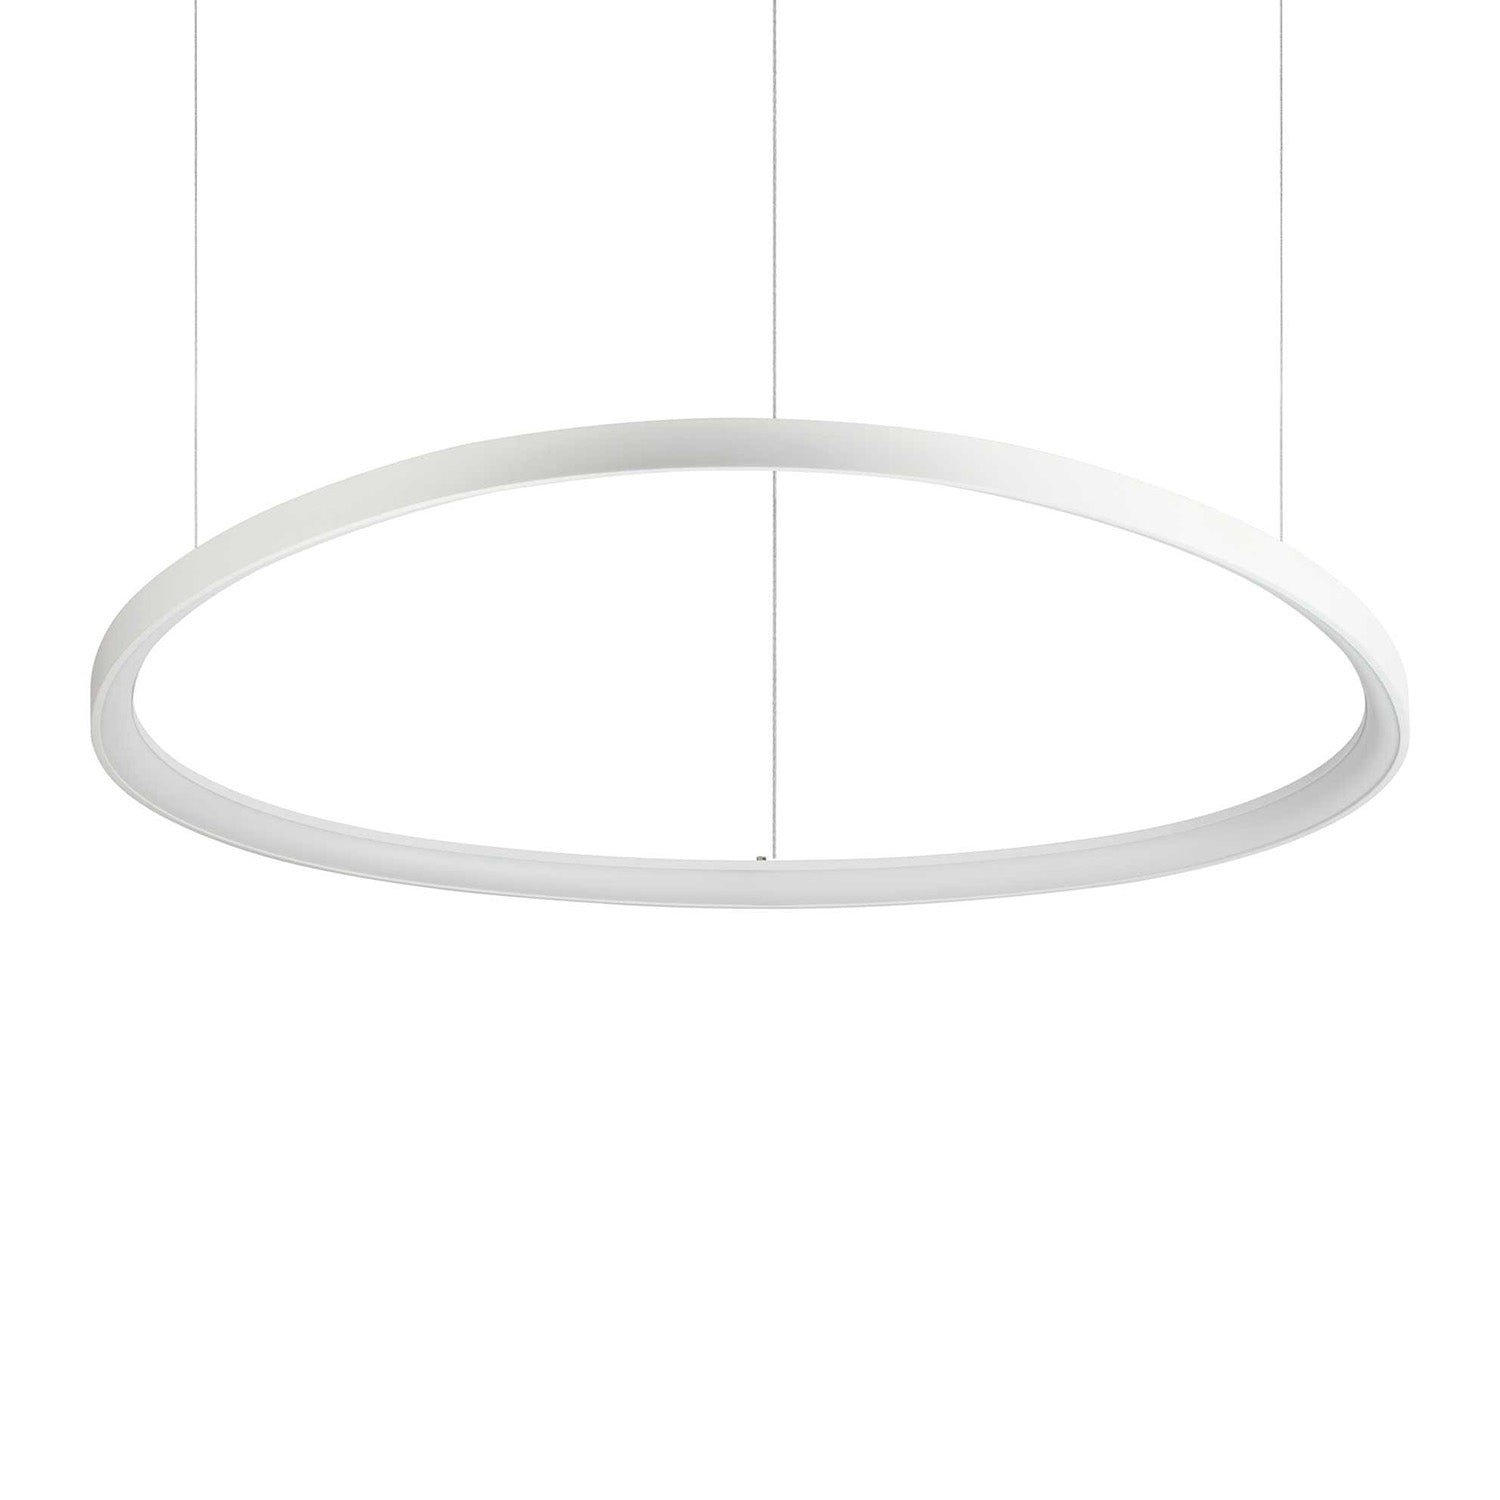 GEMINI – Integrierte ovale LED-Pendelleuchte in Gold, Schwarz oder Weißaluminium